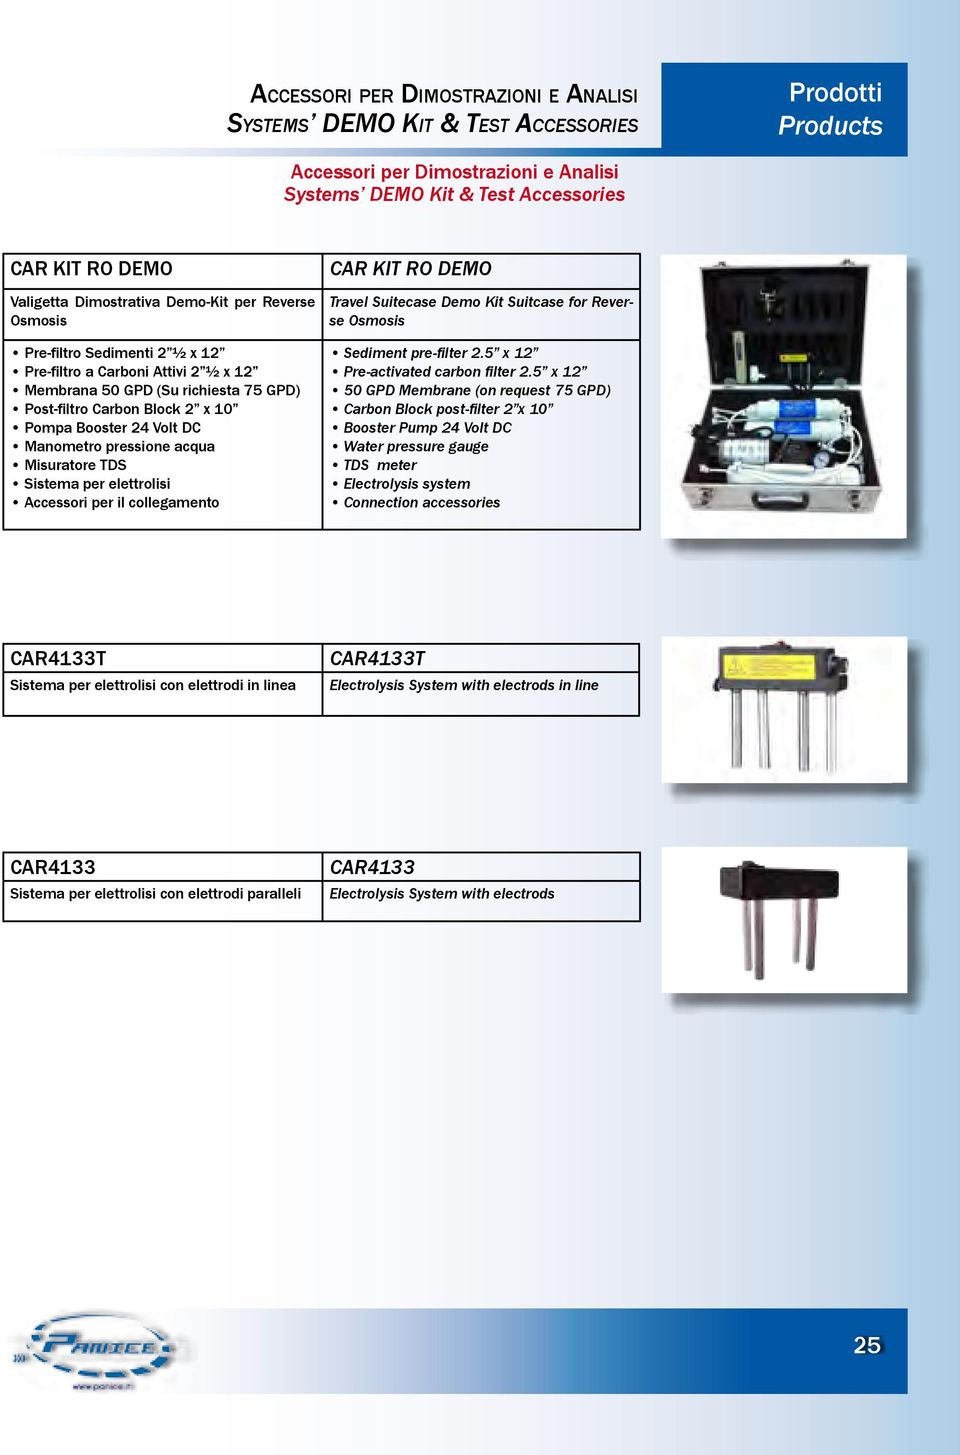 Manometro pressione acqua Misuratore TDS Sistema per elettrolisi Accessori per il collegamento CAR KIT RO DEMO Travel Suitecase Demo Kit Suitcase for Reverse Osmosis Sediment pre-filter 2.